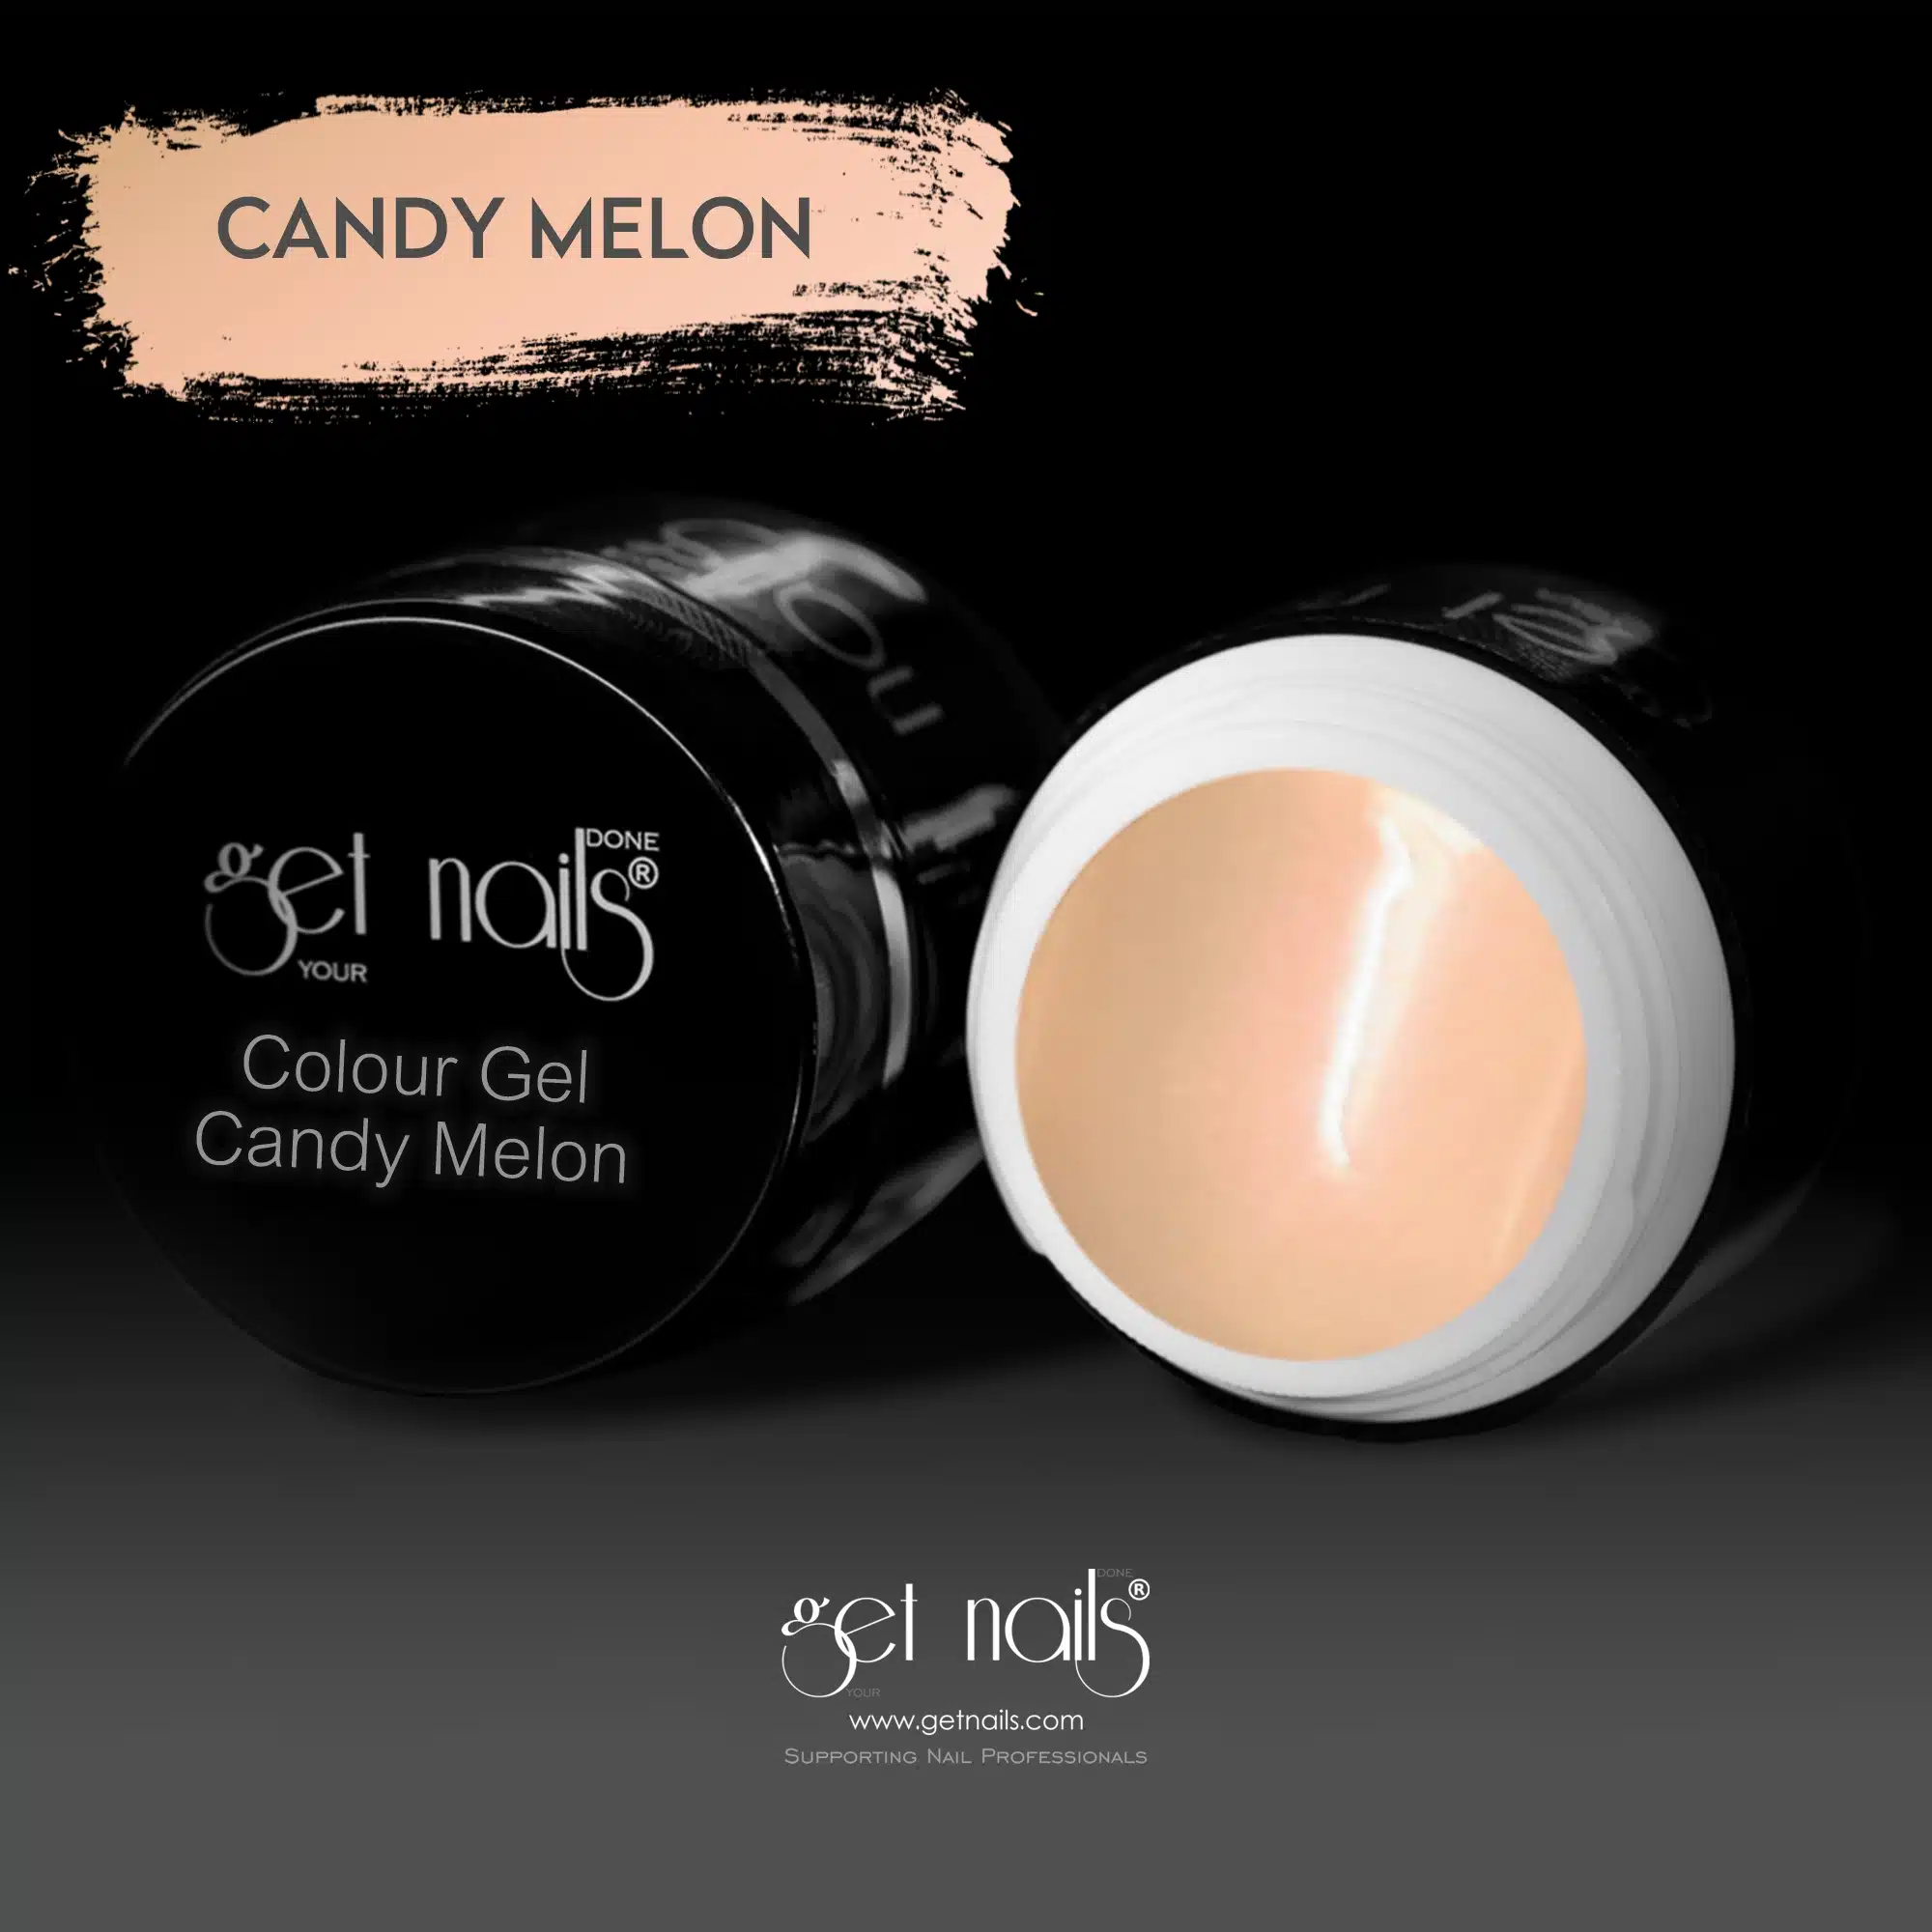 Get Nails Austria - Color Gel Candy Melon 5g